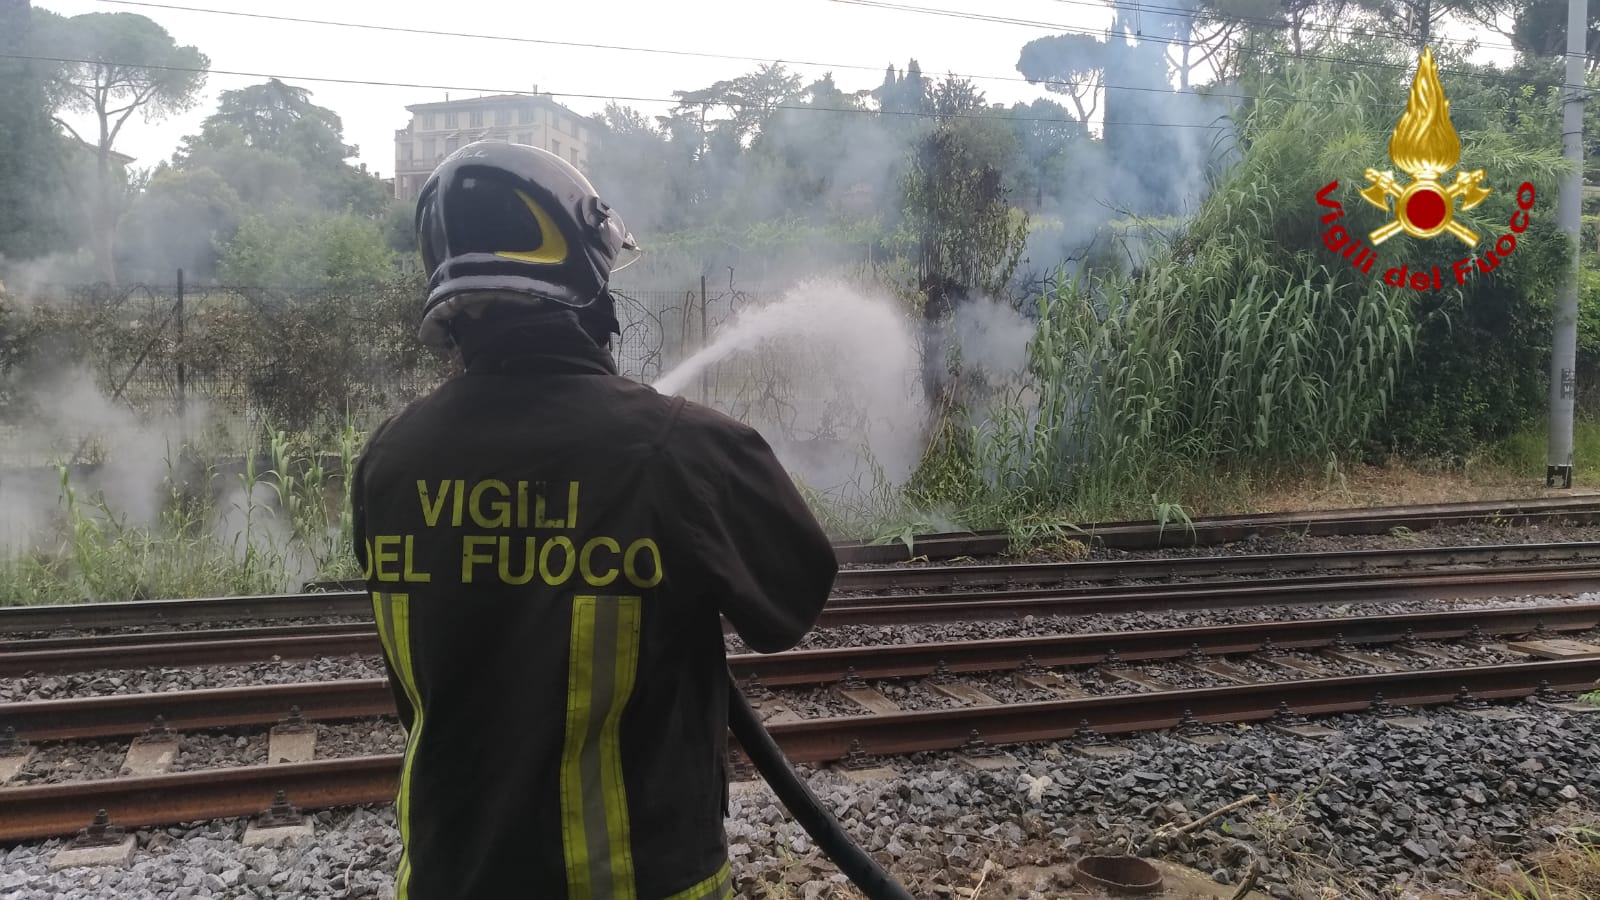 Locomotore a fuoco sulla linea ferroviaria tra Viareggio e Pisa